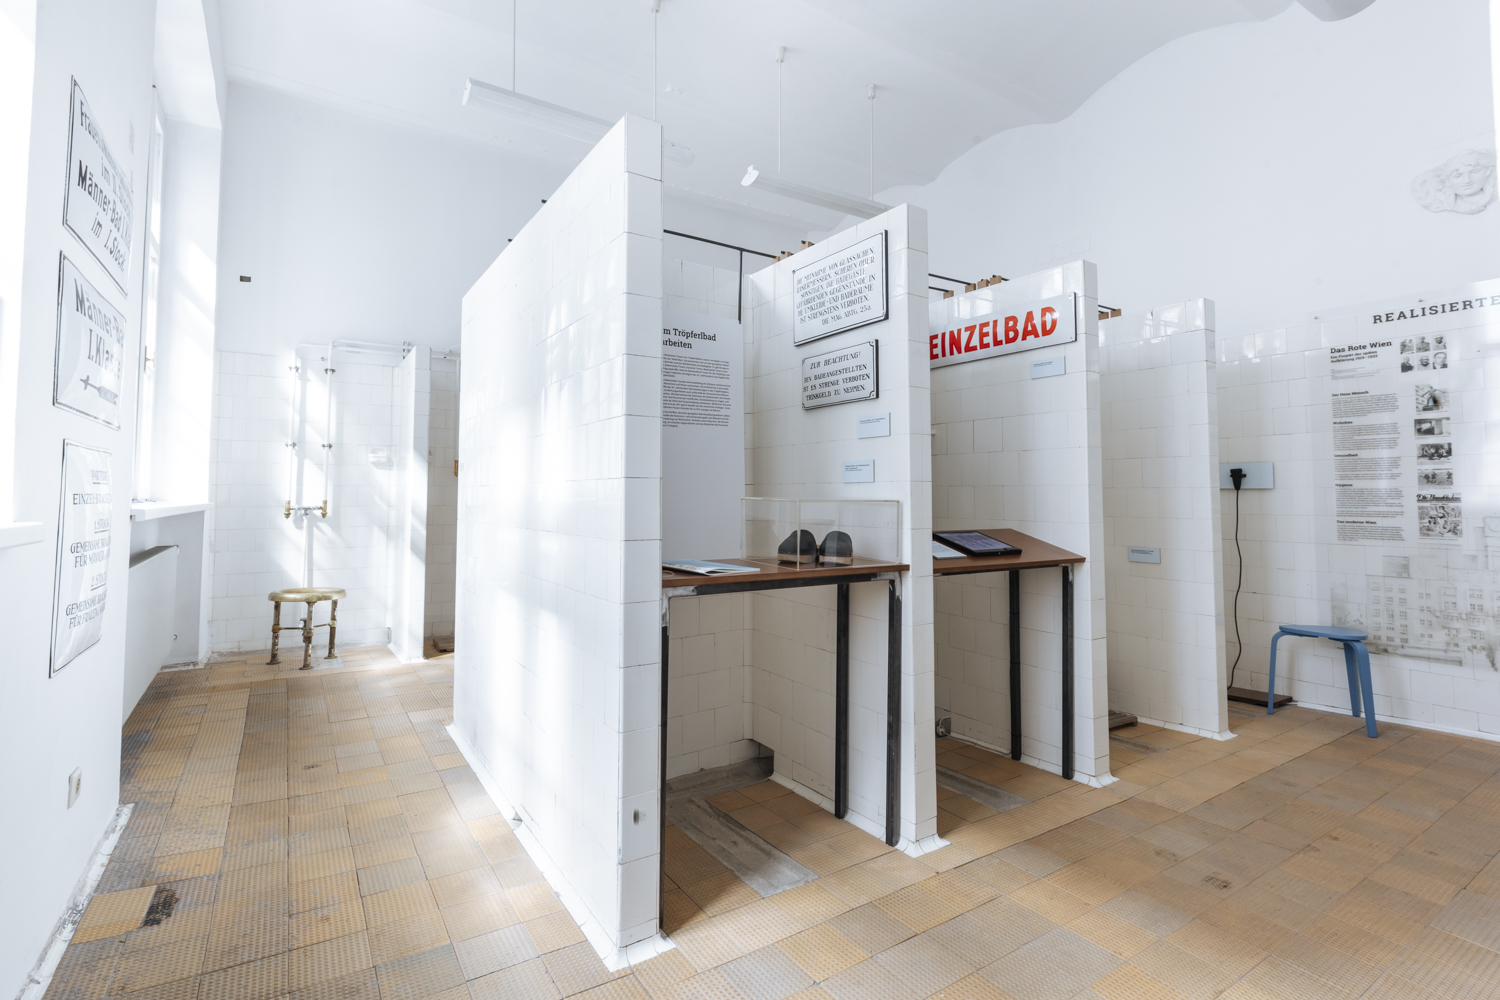 Dauerausstellung "Im Tröpferlbad - Geschichte(n) von Gesundheit und Hygiene" im original erhaltenen Tröpferlbad-Duschraum, Foto: Marlene Fröhlich | luxundlumen.com